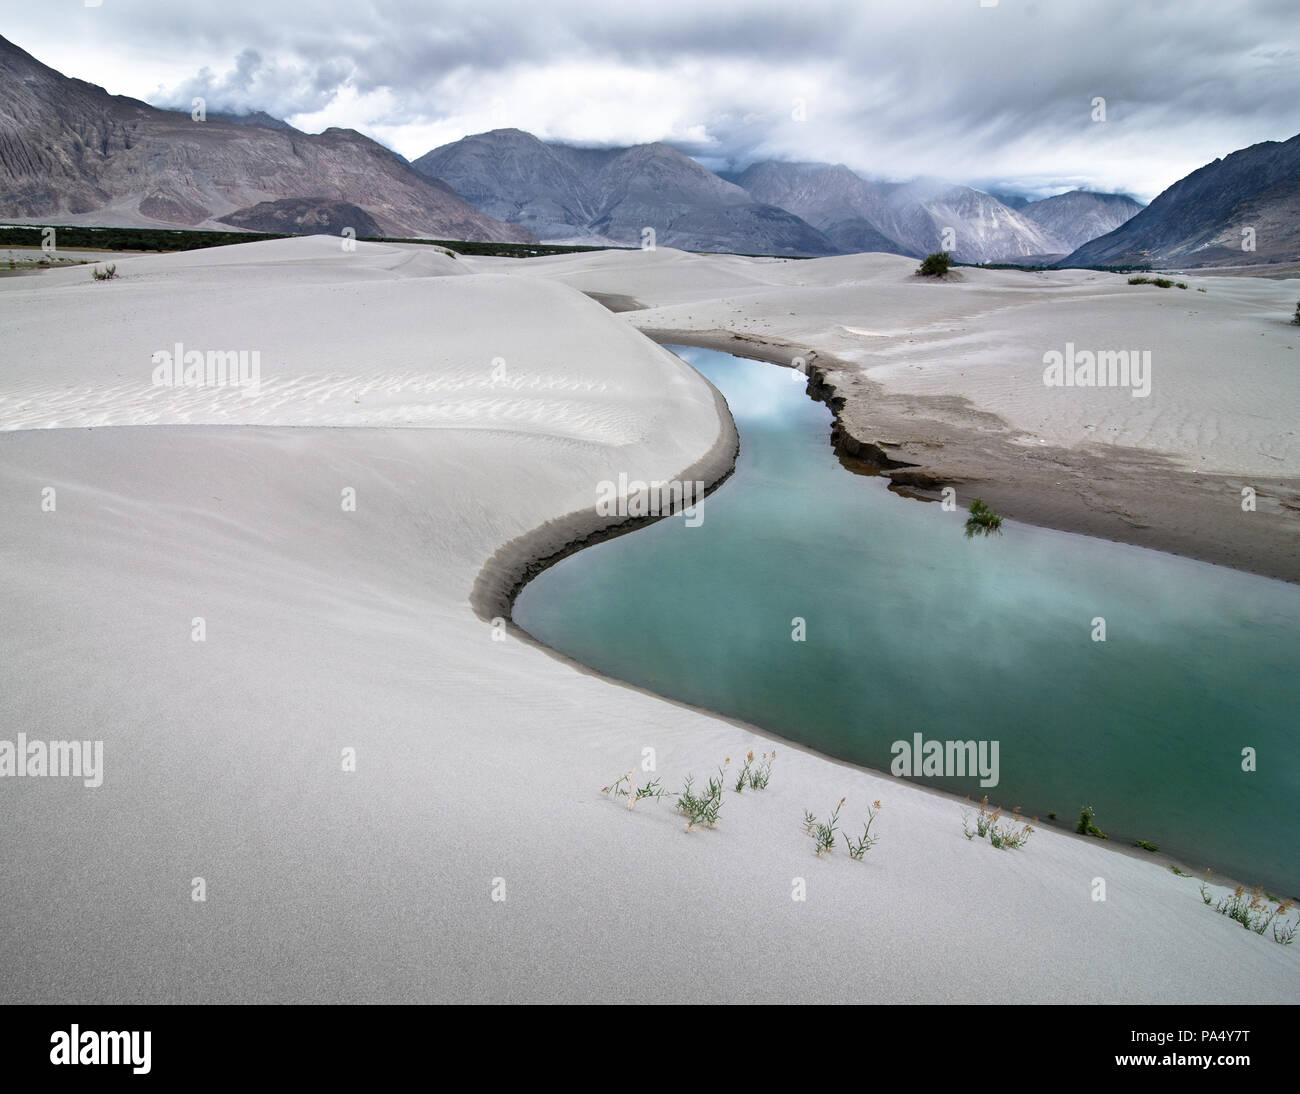 Sanddünen des Nubra Valley mit Fluss und Wüstenpflanze. Landschaft des Himalaya-Gebirges. Indien, Ladakh, Höhe 3100 m Stockfoto